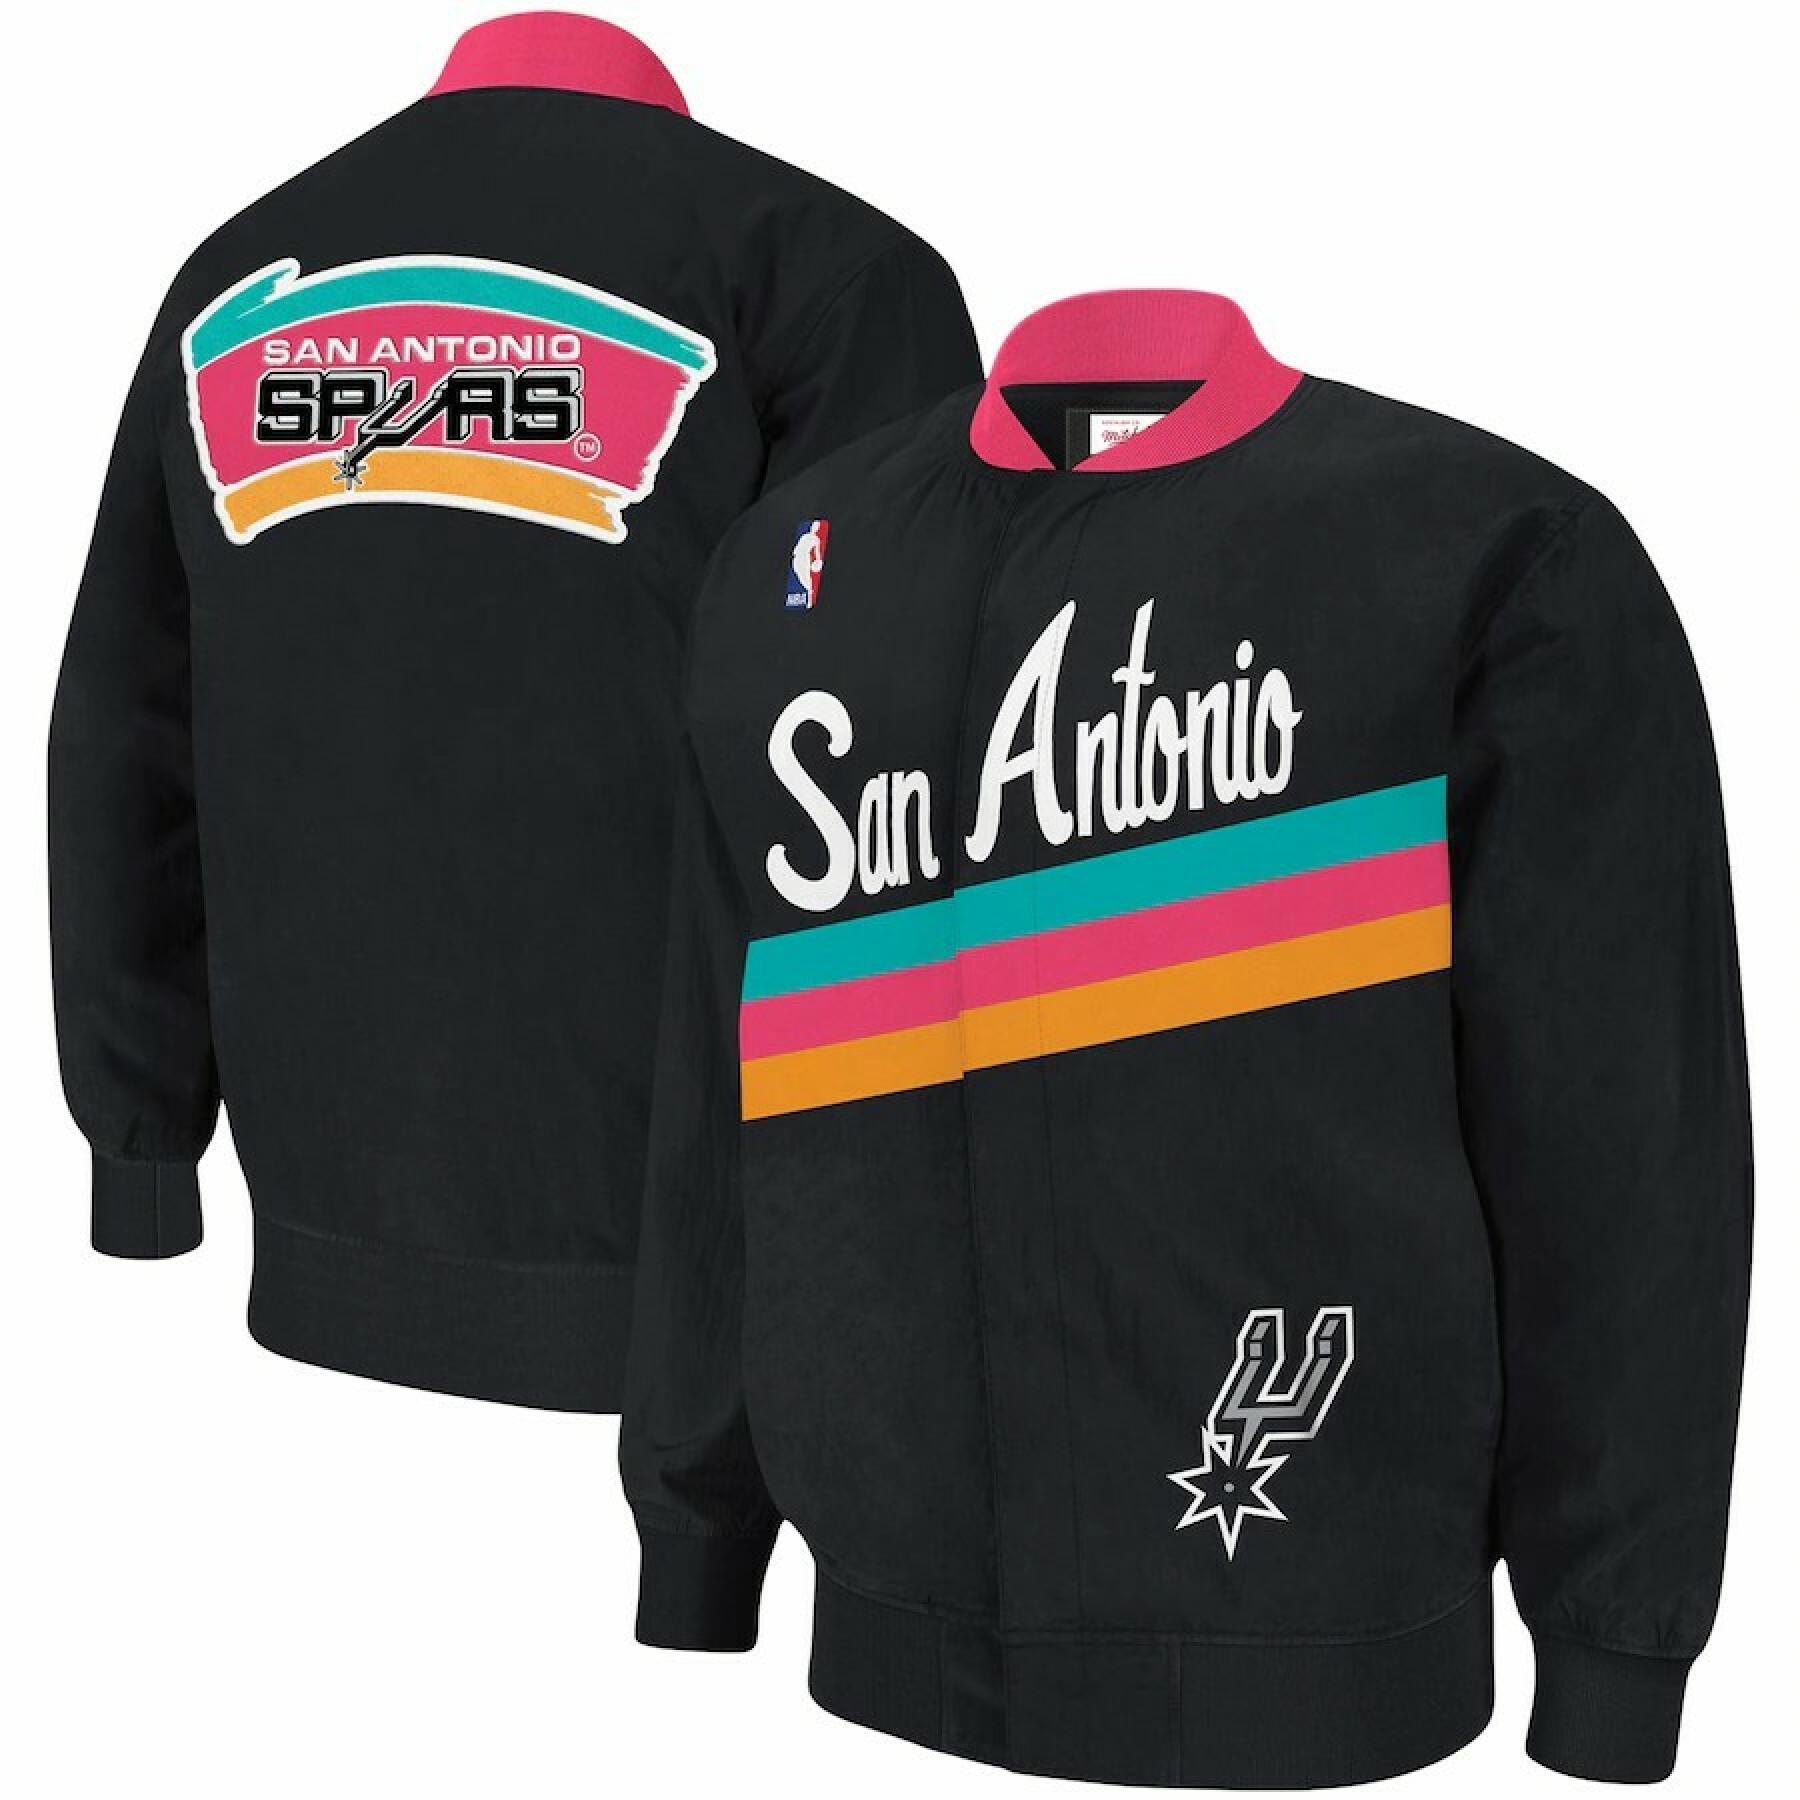 Jacket San Antonio Spurs authentic